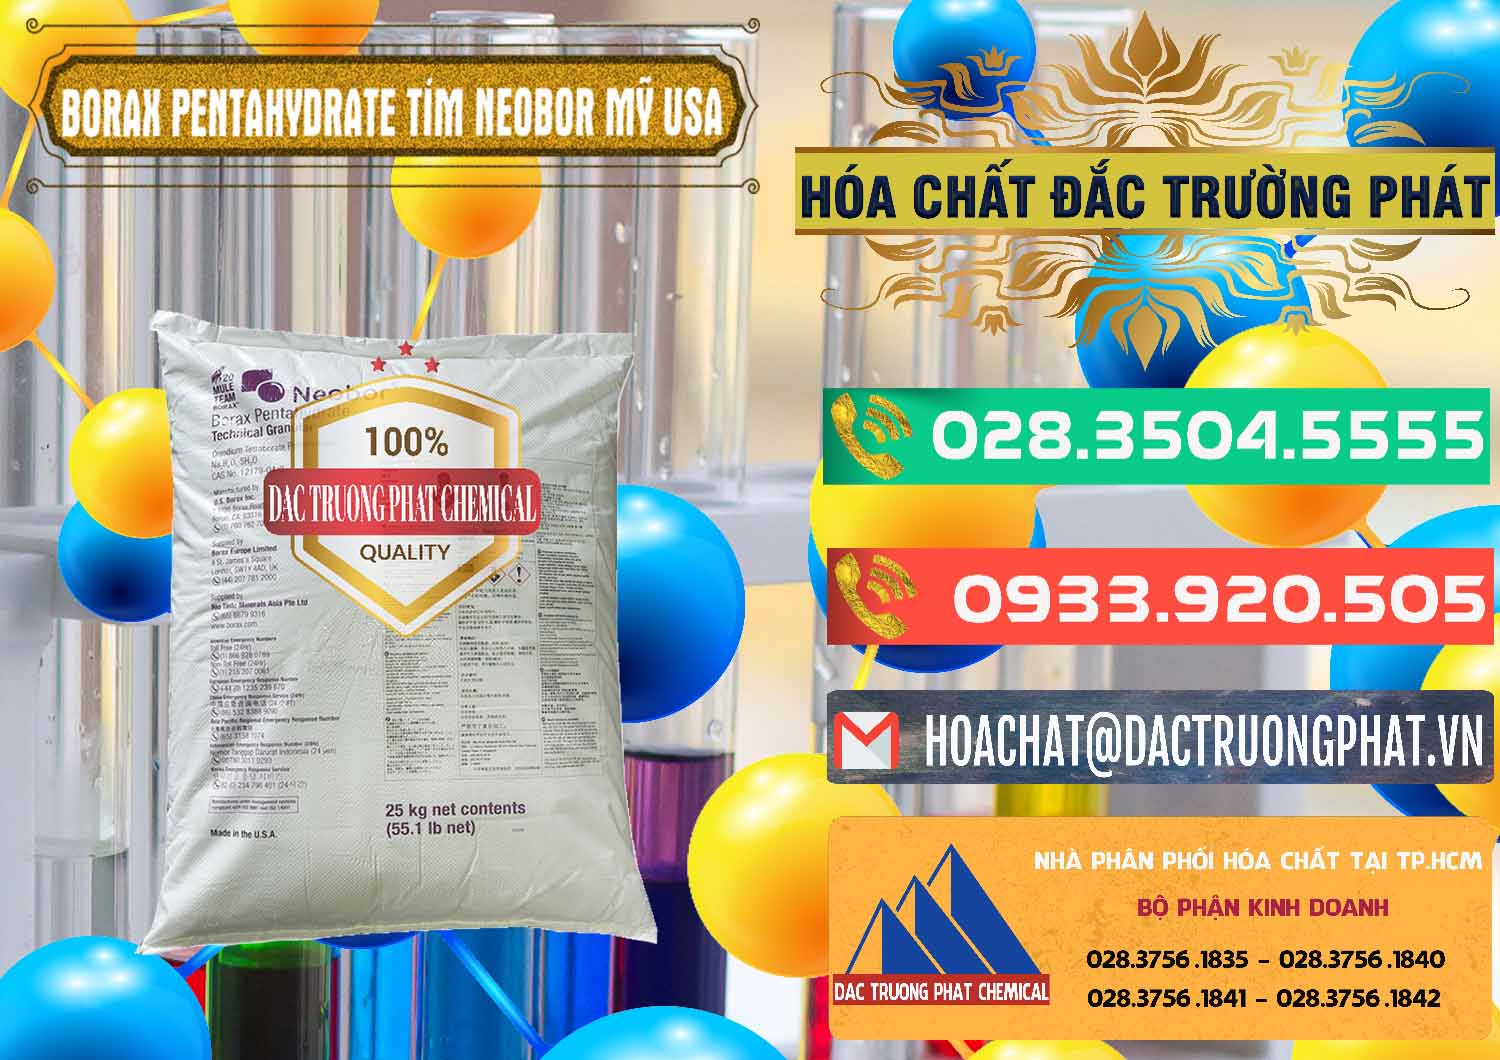 Nơi cung ứng ( bán ) Borax Pentahydrate Bao Tím Neobor TG Mỹ Usa - 0277 - Đơn vị chuyên kinh doanh ( phân phối ) hóa chất tại TP.HCM - congtyhoachat.com.vn